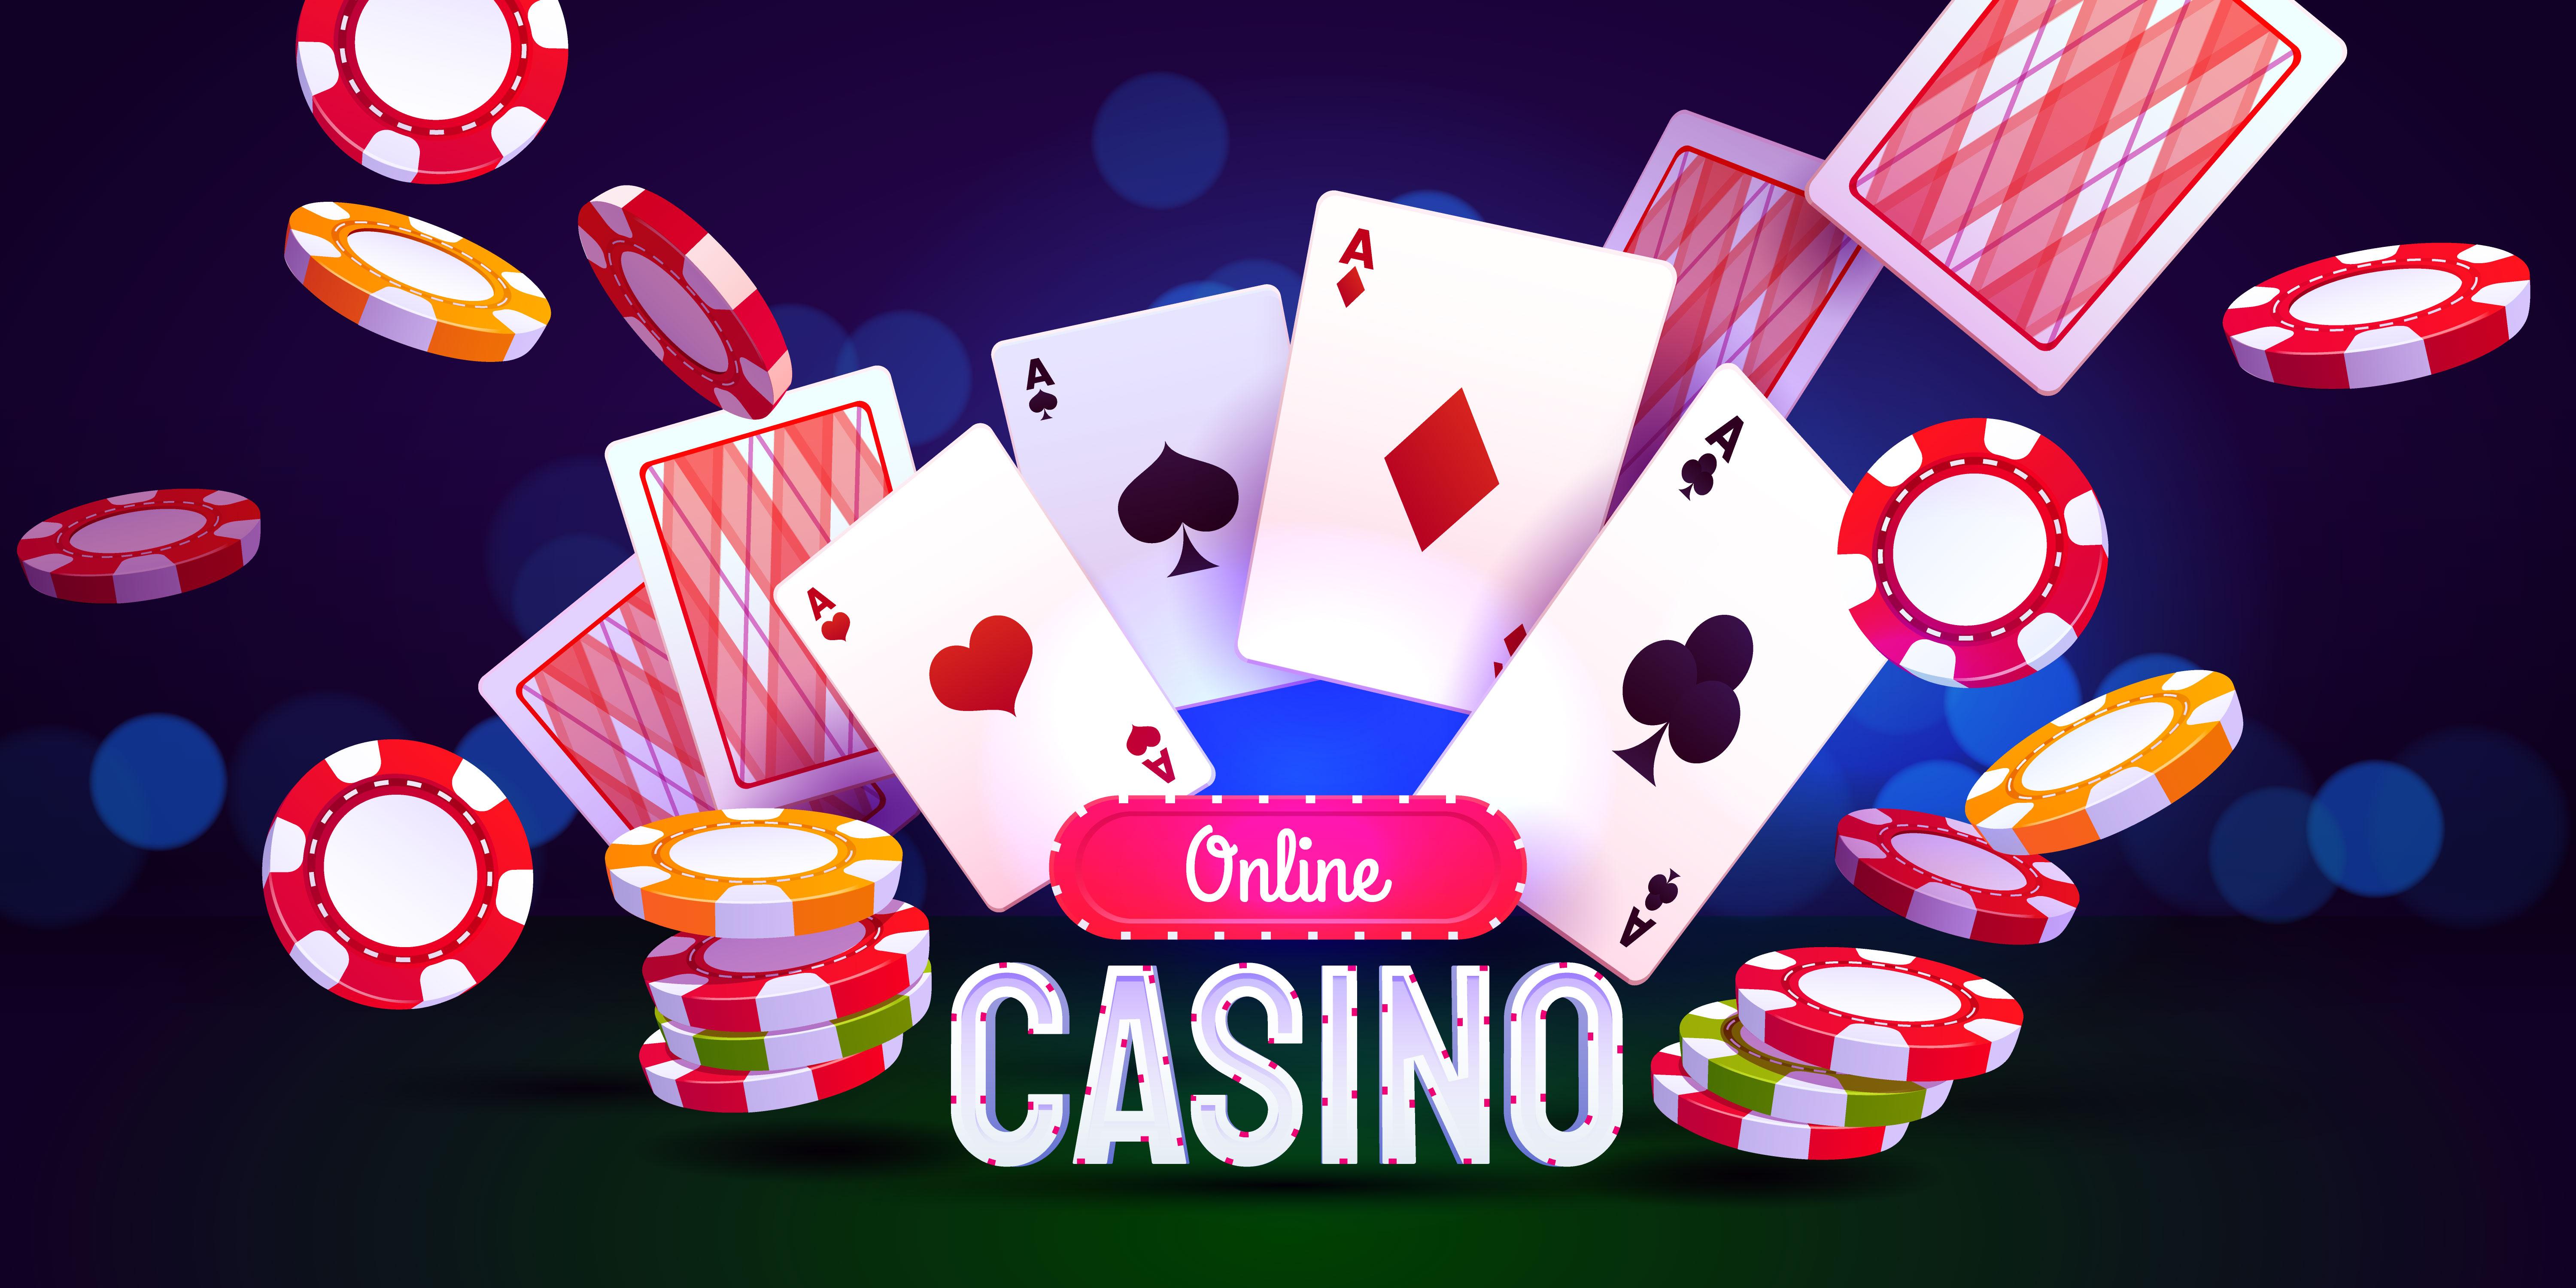 Выигрышей почти онлайн казино приглашают играть видеослоты бесплатно удобно полезно играть в карты онлайн бесплатно козла